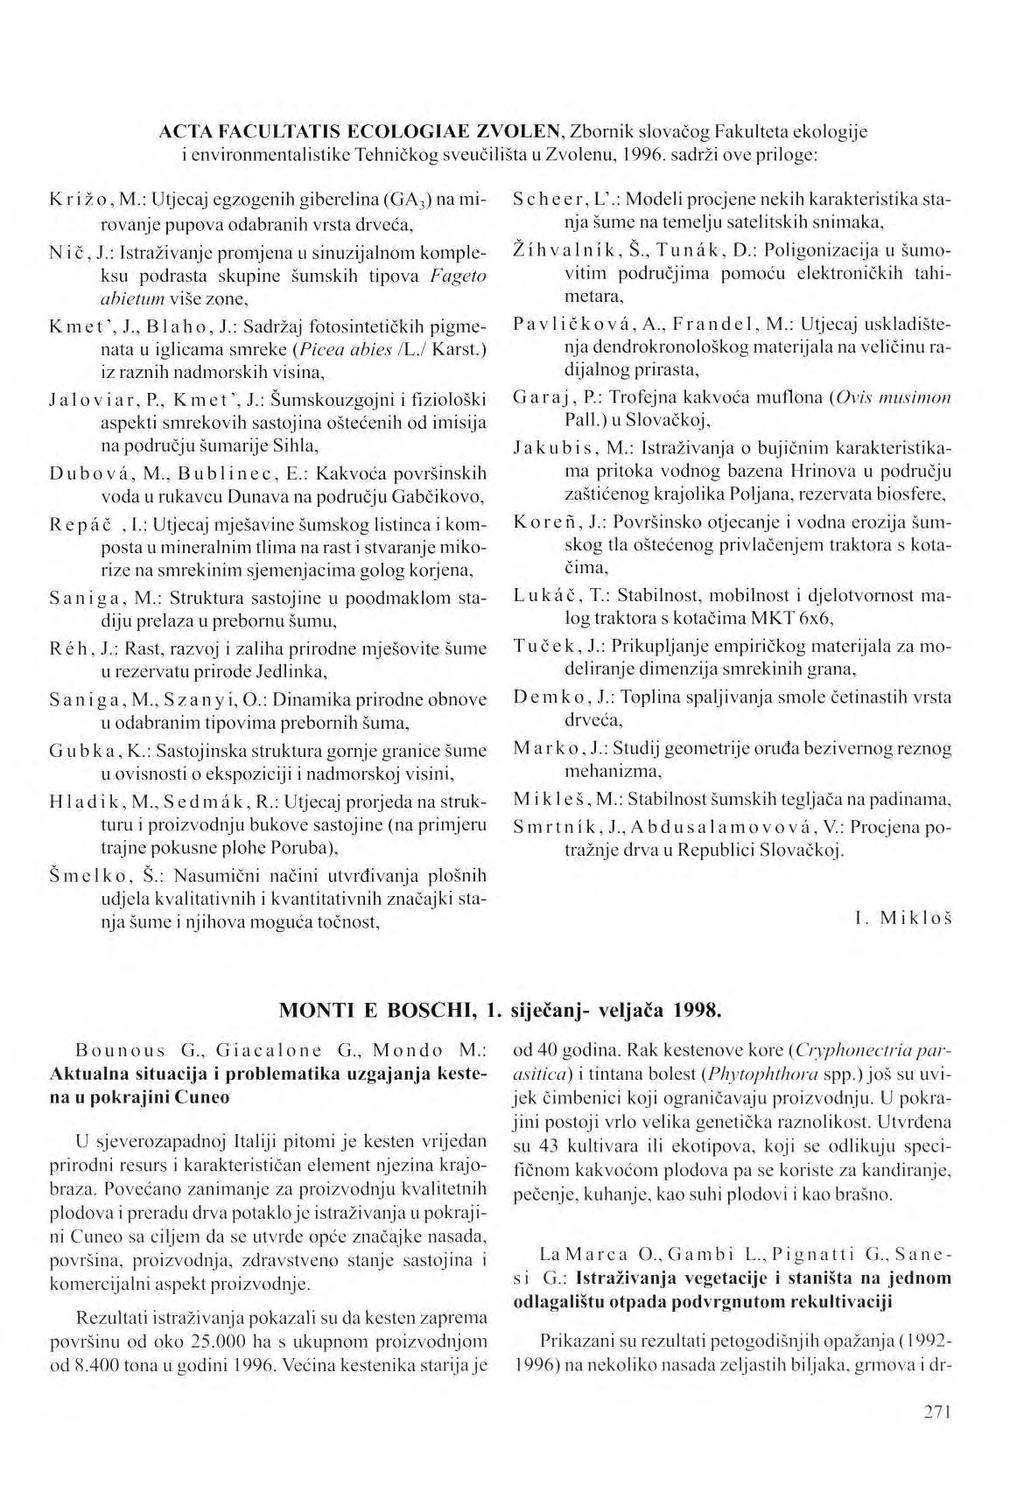 ACTA FACULTATIS ECOLOGIAE ZVOLEN, Zbornik slovačog Fakulteta ekologije i environmentalistike Tehničkog sveučilišta u Zvolenu, 1996. sadrži ove priloge: Kri žo, M.